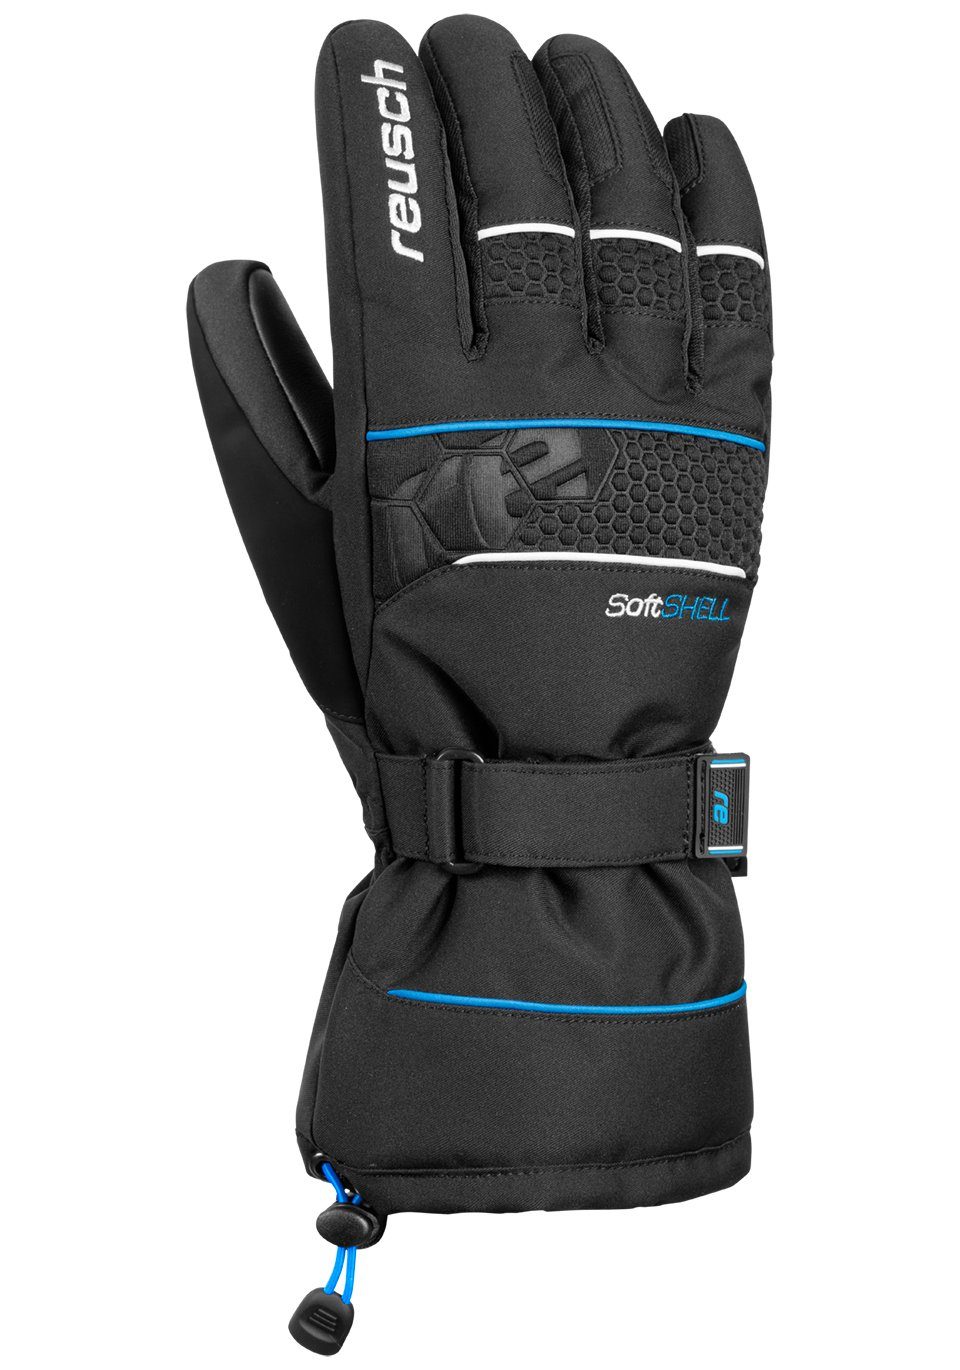 Reusch Skihandschuhe XT blau-schwarz in R-TEX Connor sportlichem Design